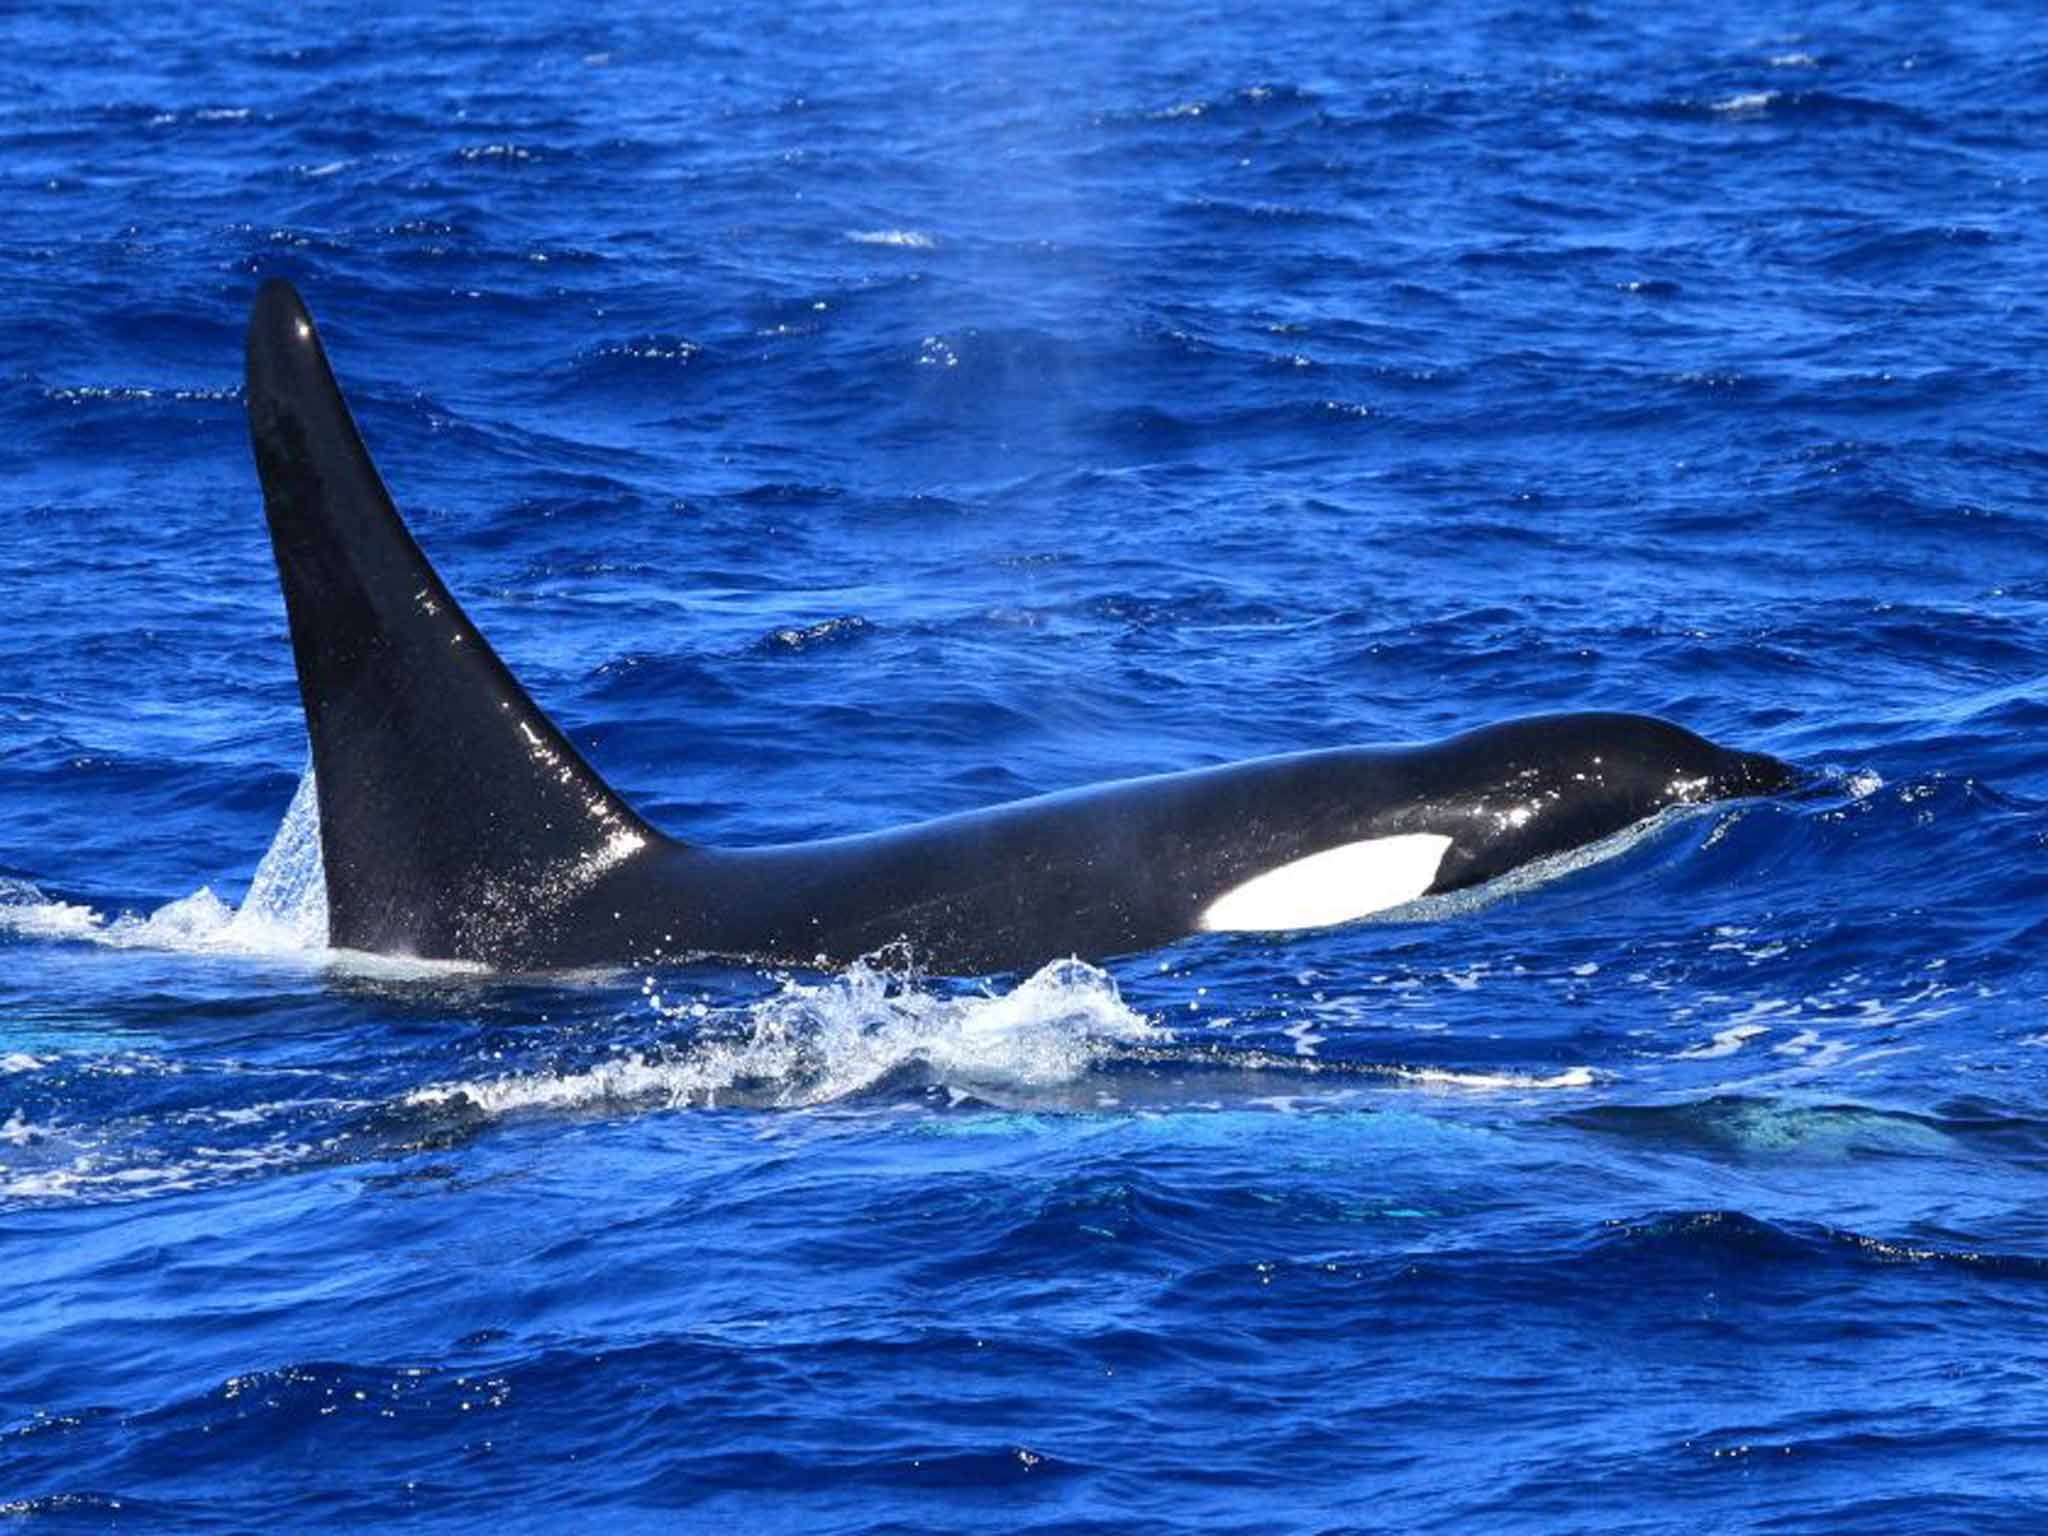 An orca